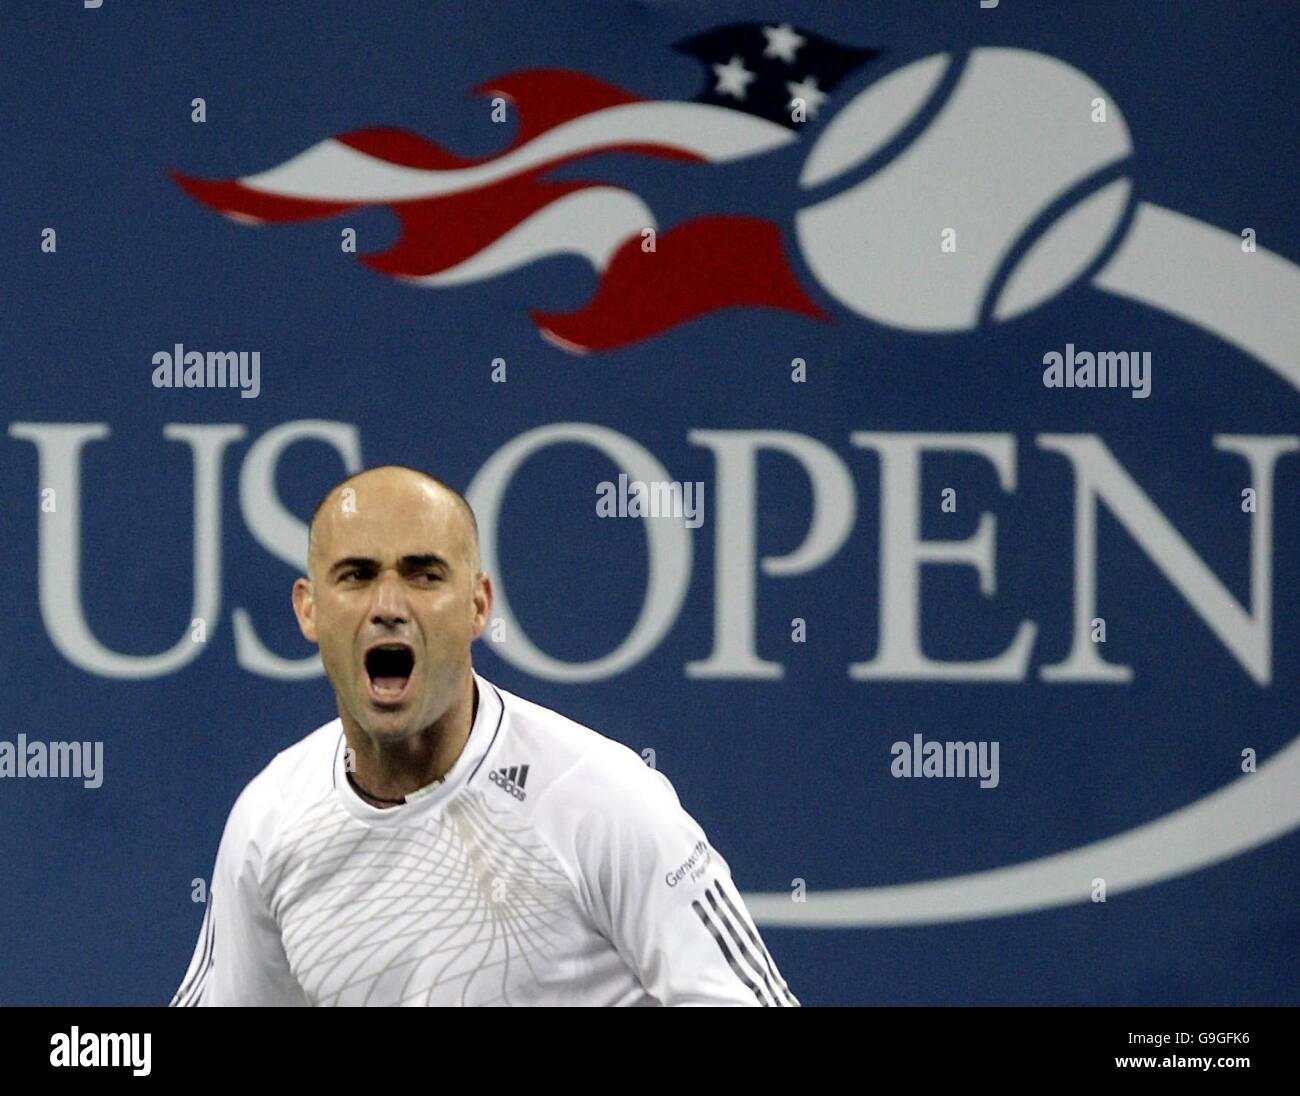 Tennis - US Open - New York - terzo giorno. Andre Agassi degli Stati Uniti celebra dopo aver battuto Marcos Baghdentis nella loro seconda partita al US Open di Flushing Meadow, New York. Foto Stock